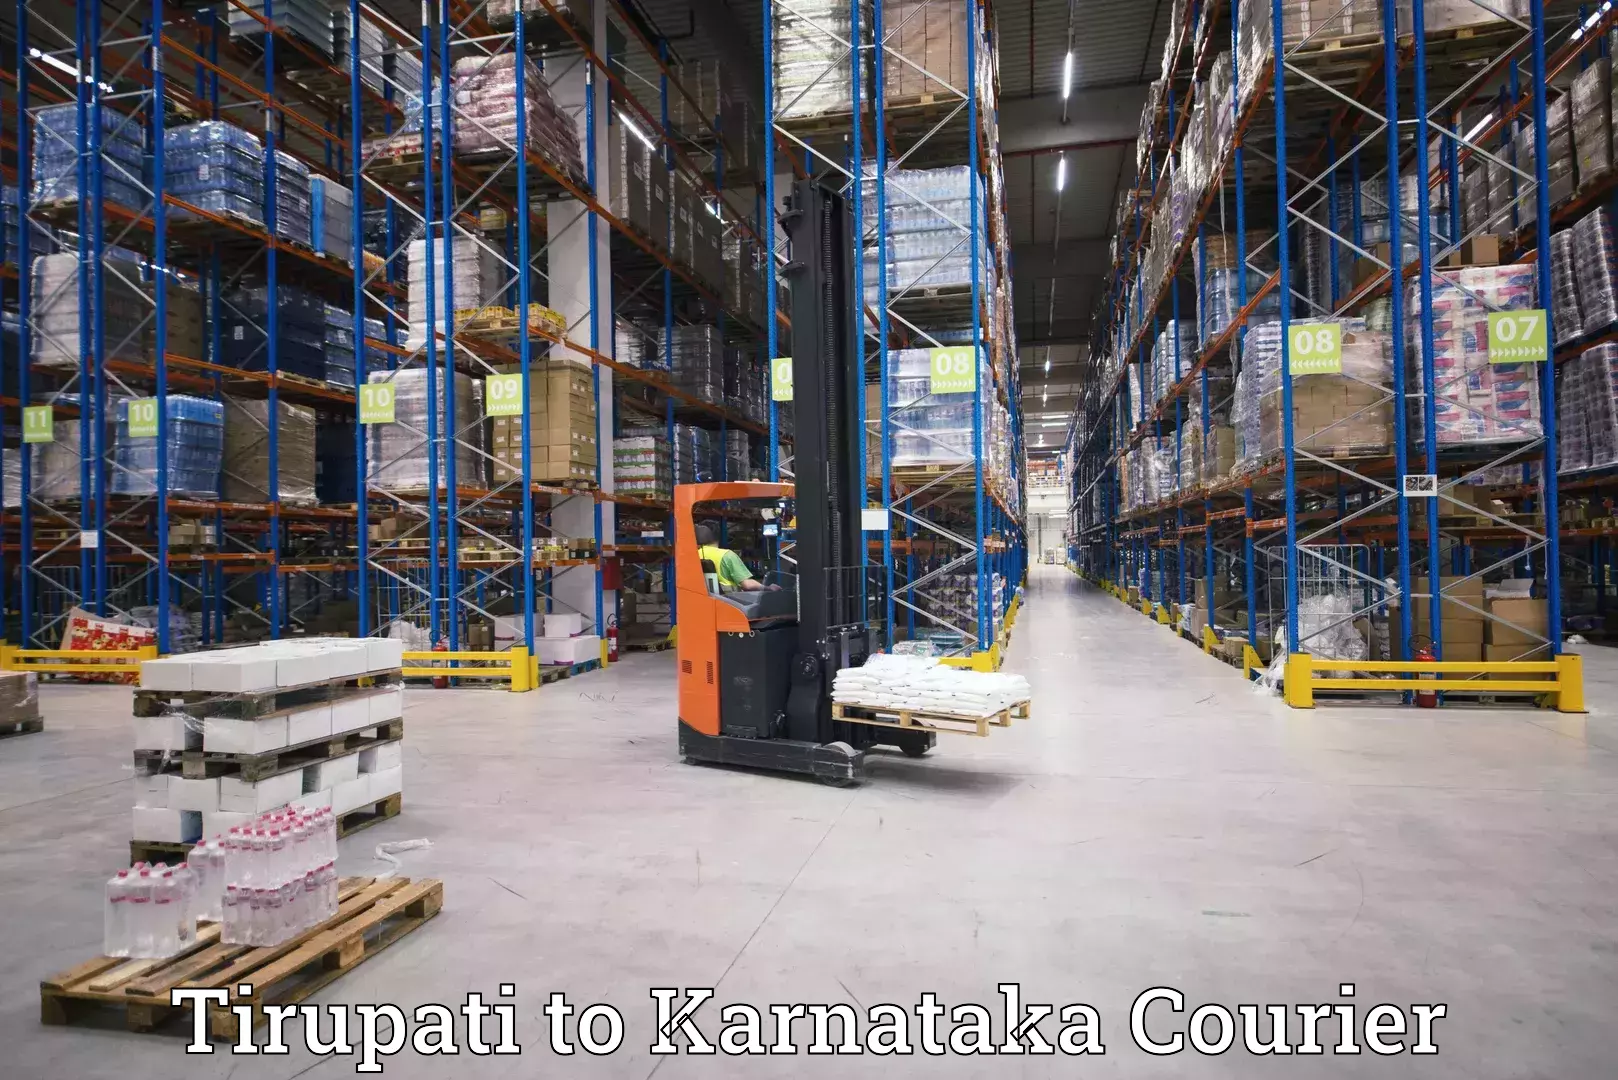 24/7 shipping services Tirupati to Tumkur